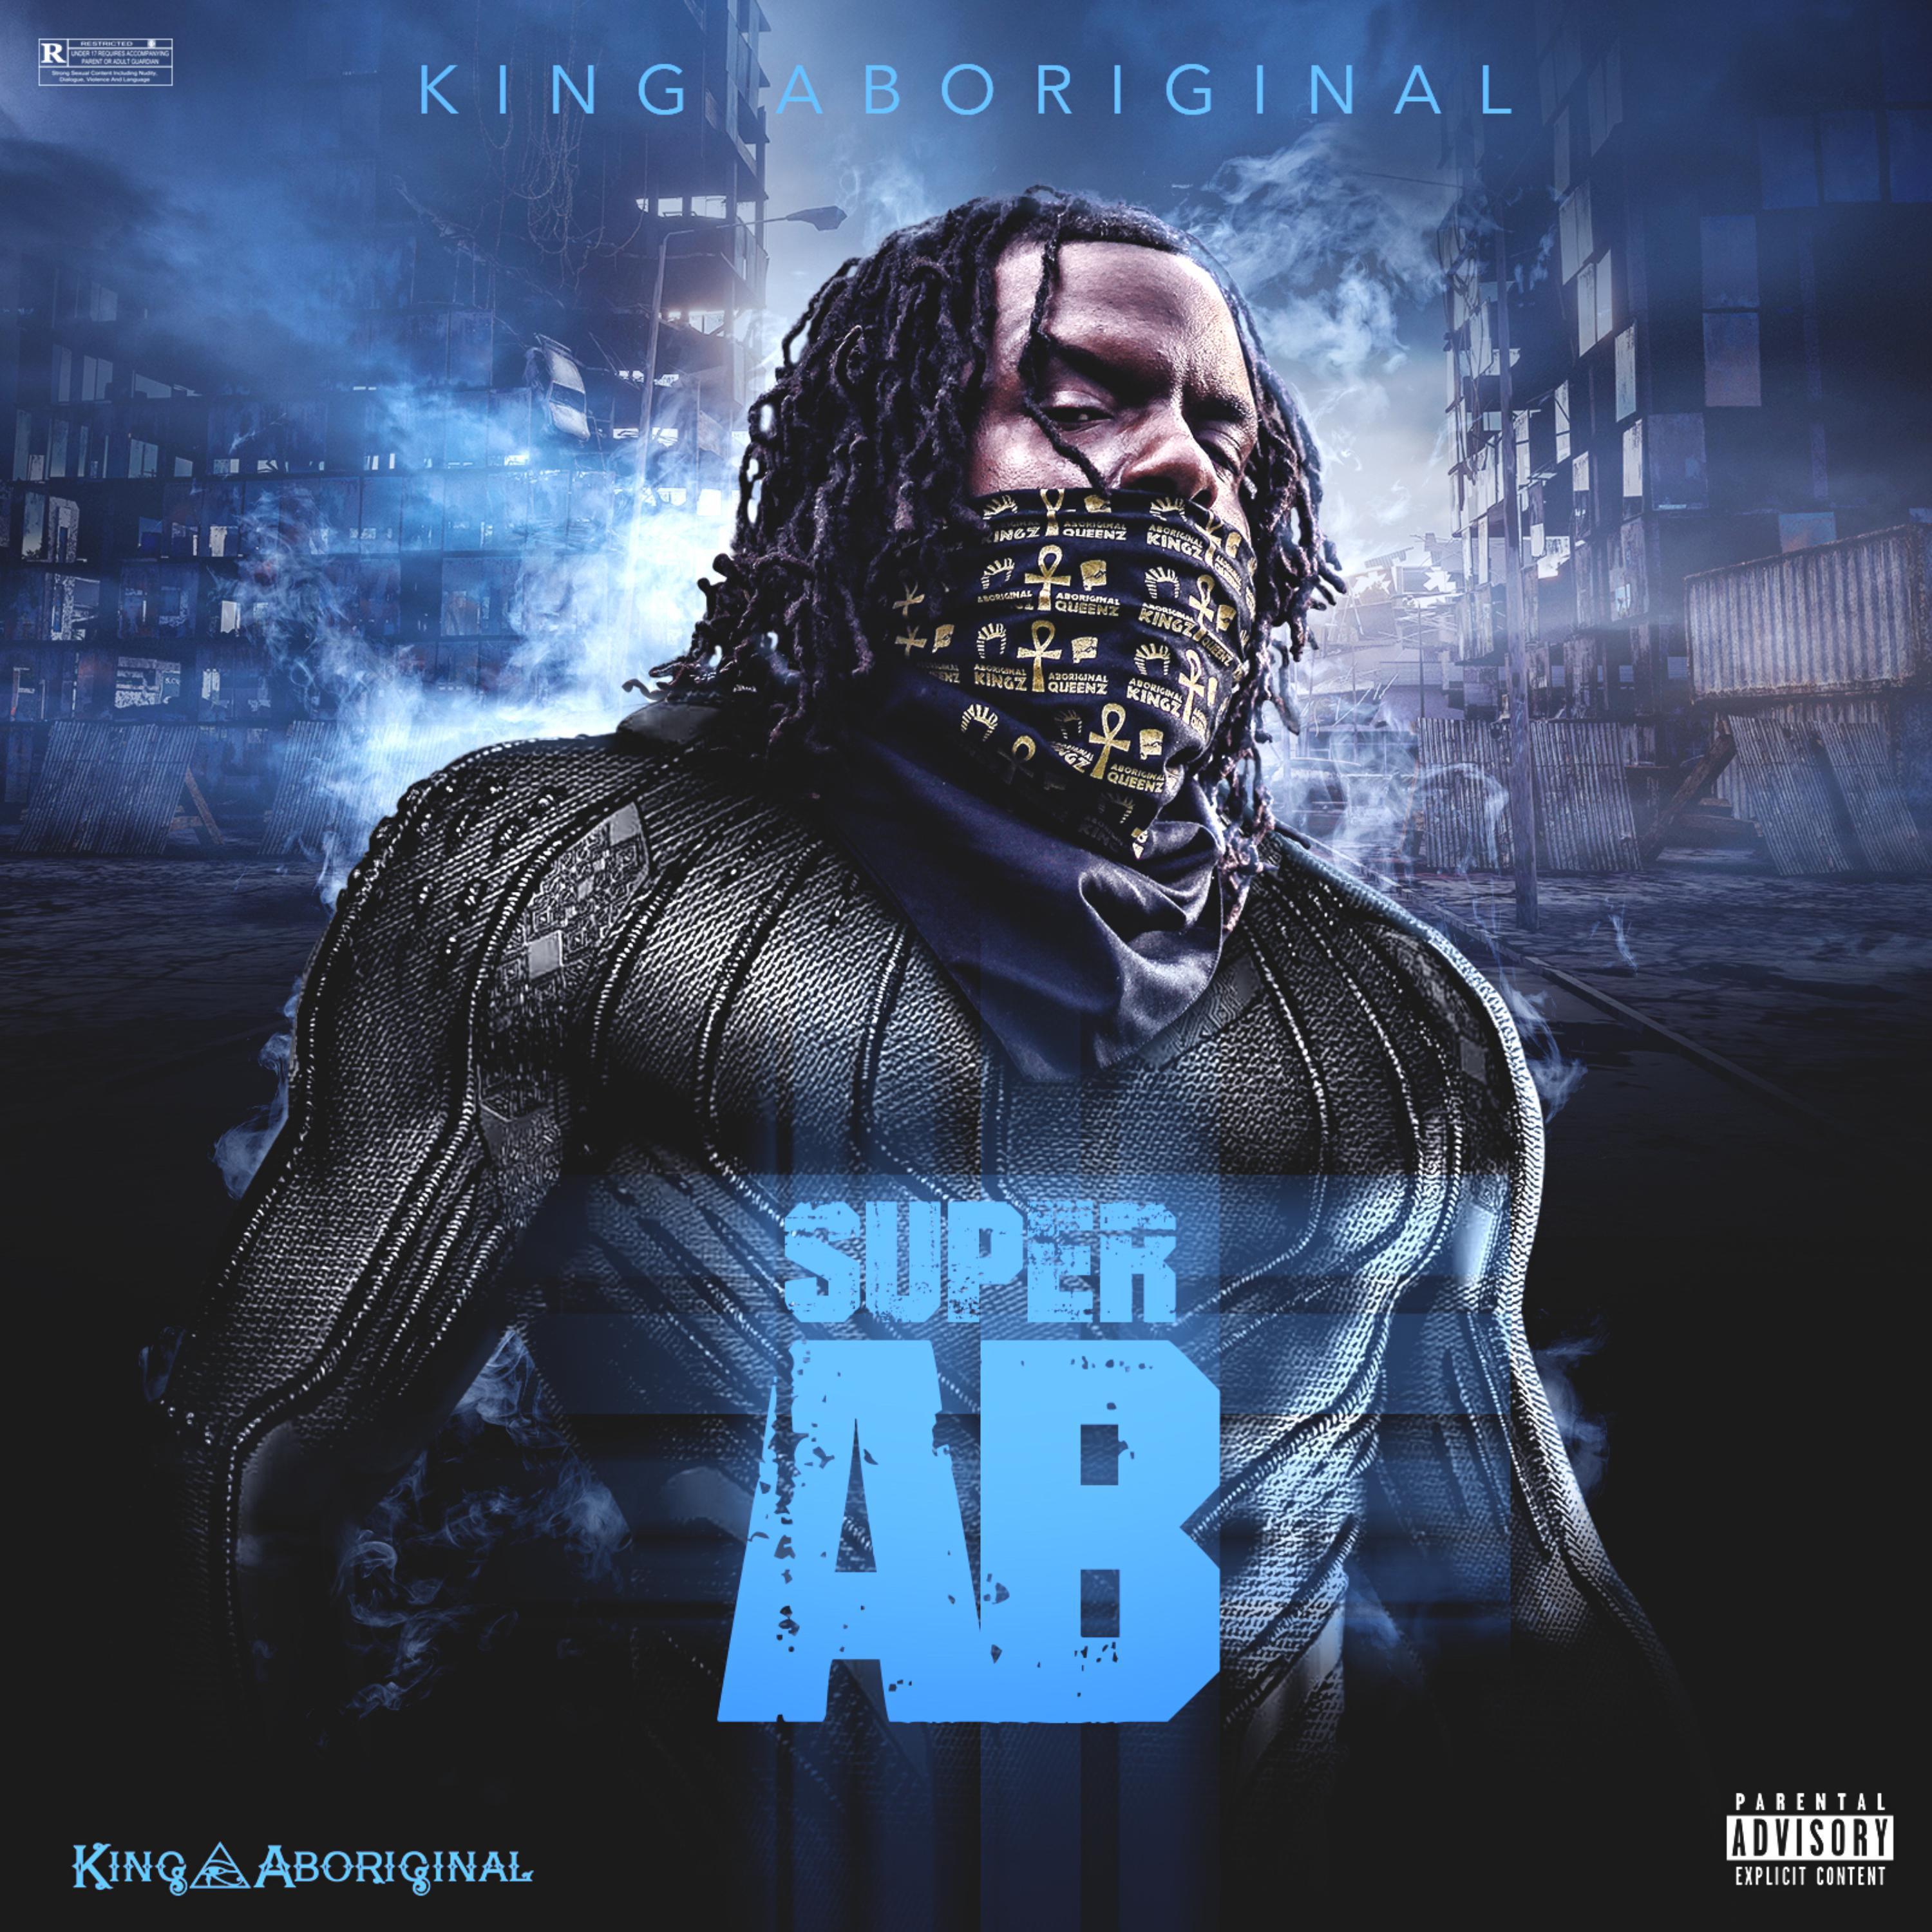 King Aboriginal - Super AB